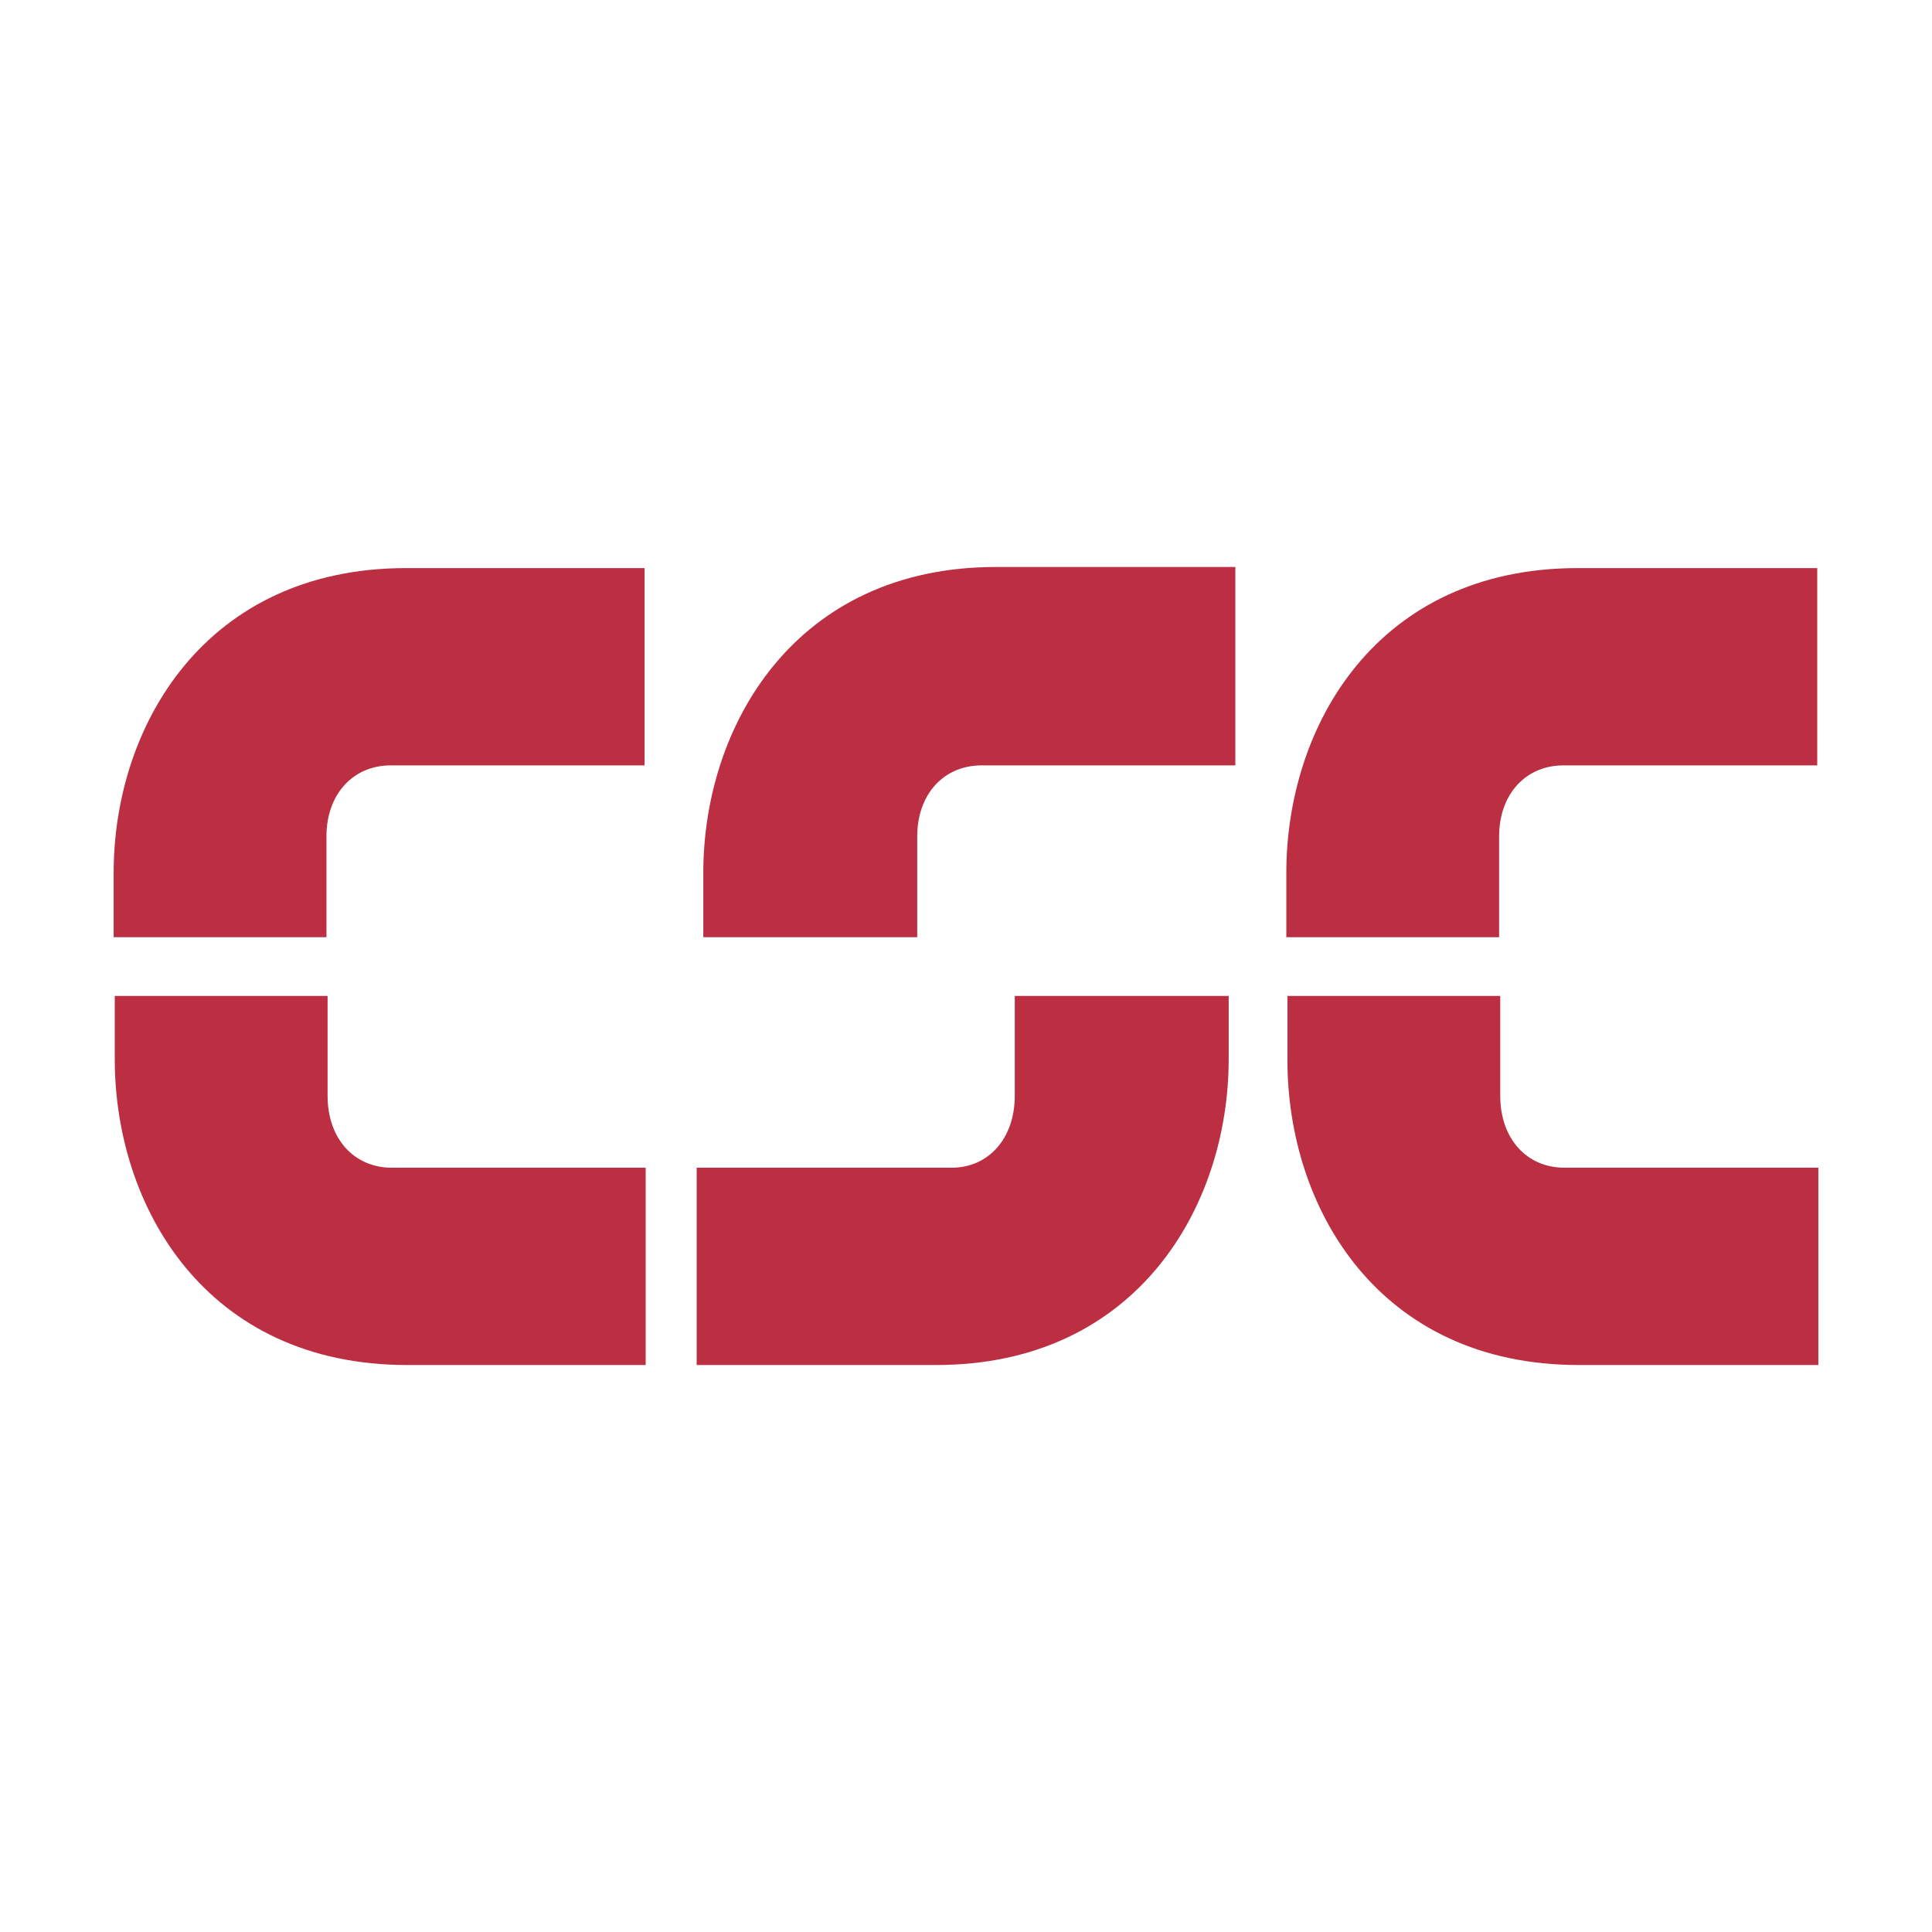 Computer Sciences Corporation (CSC) logo colors